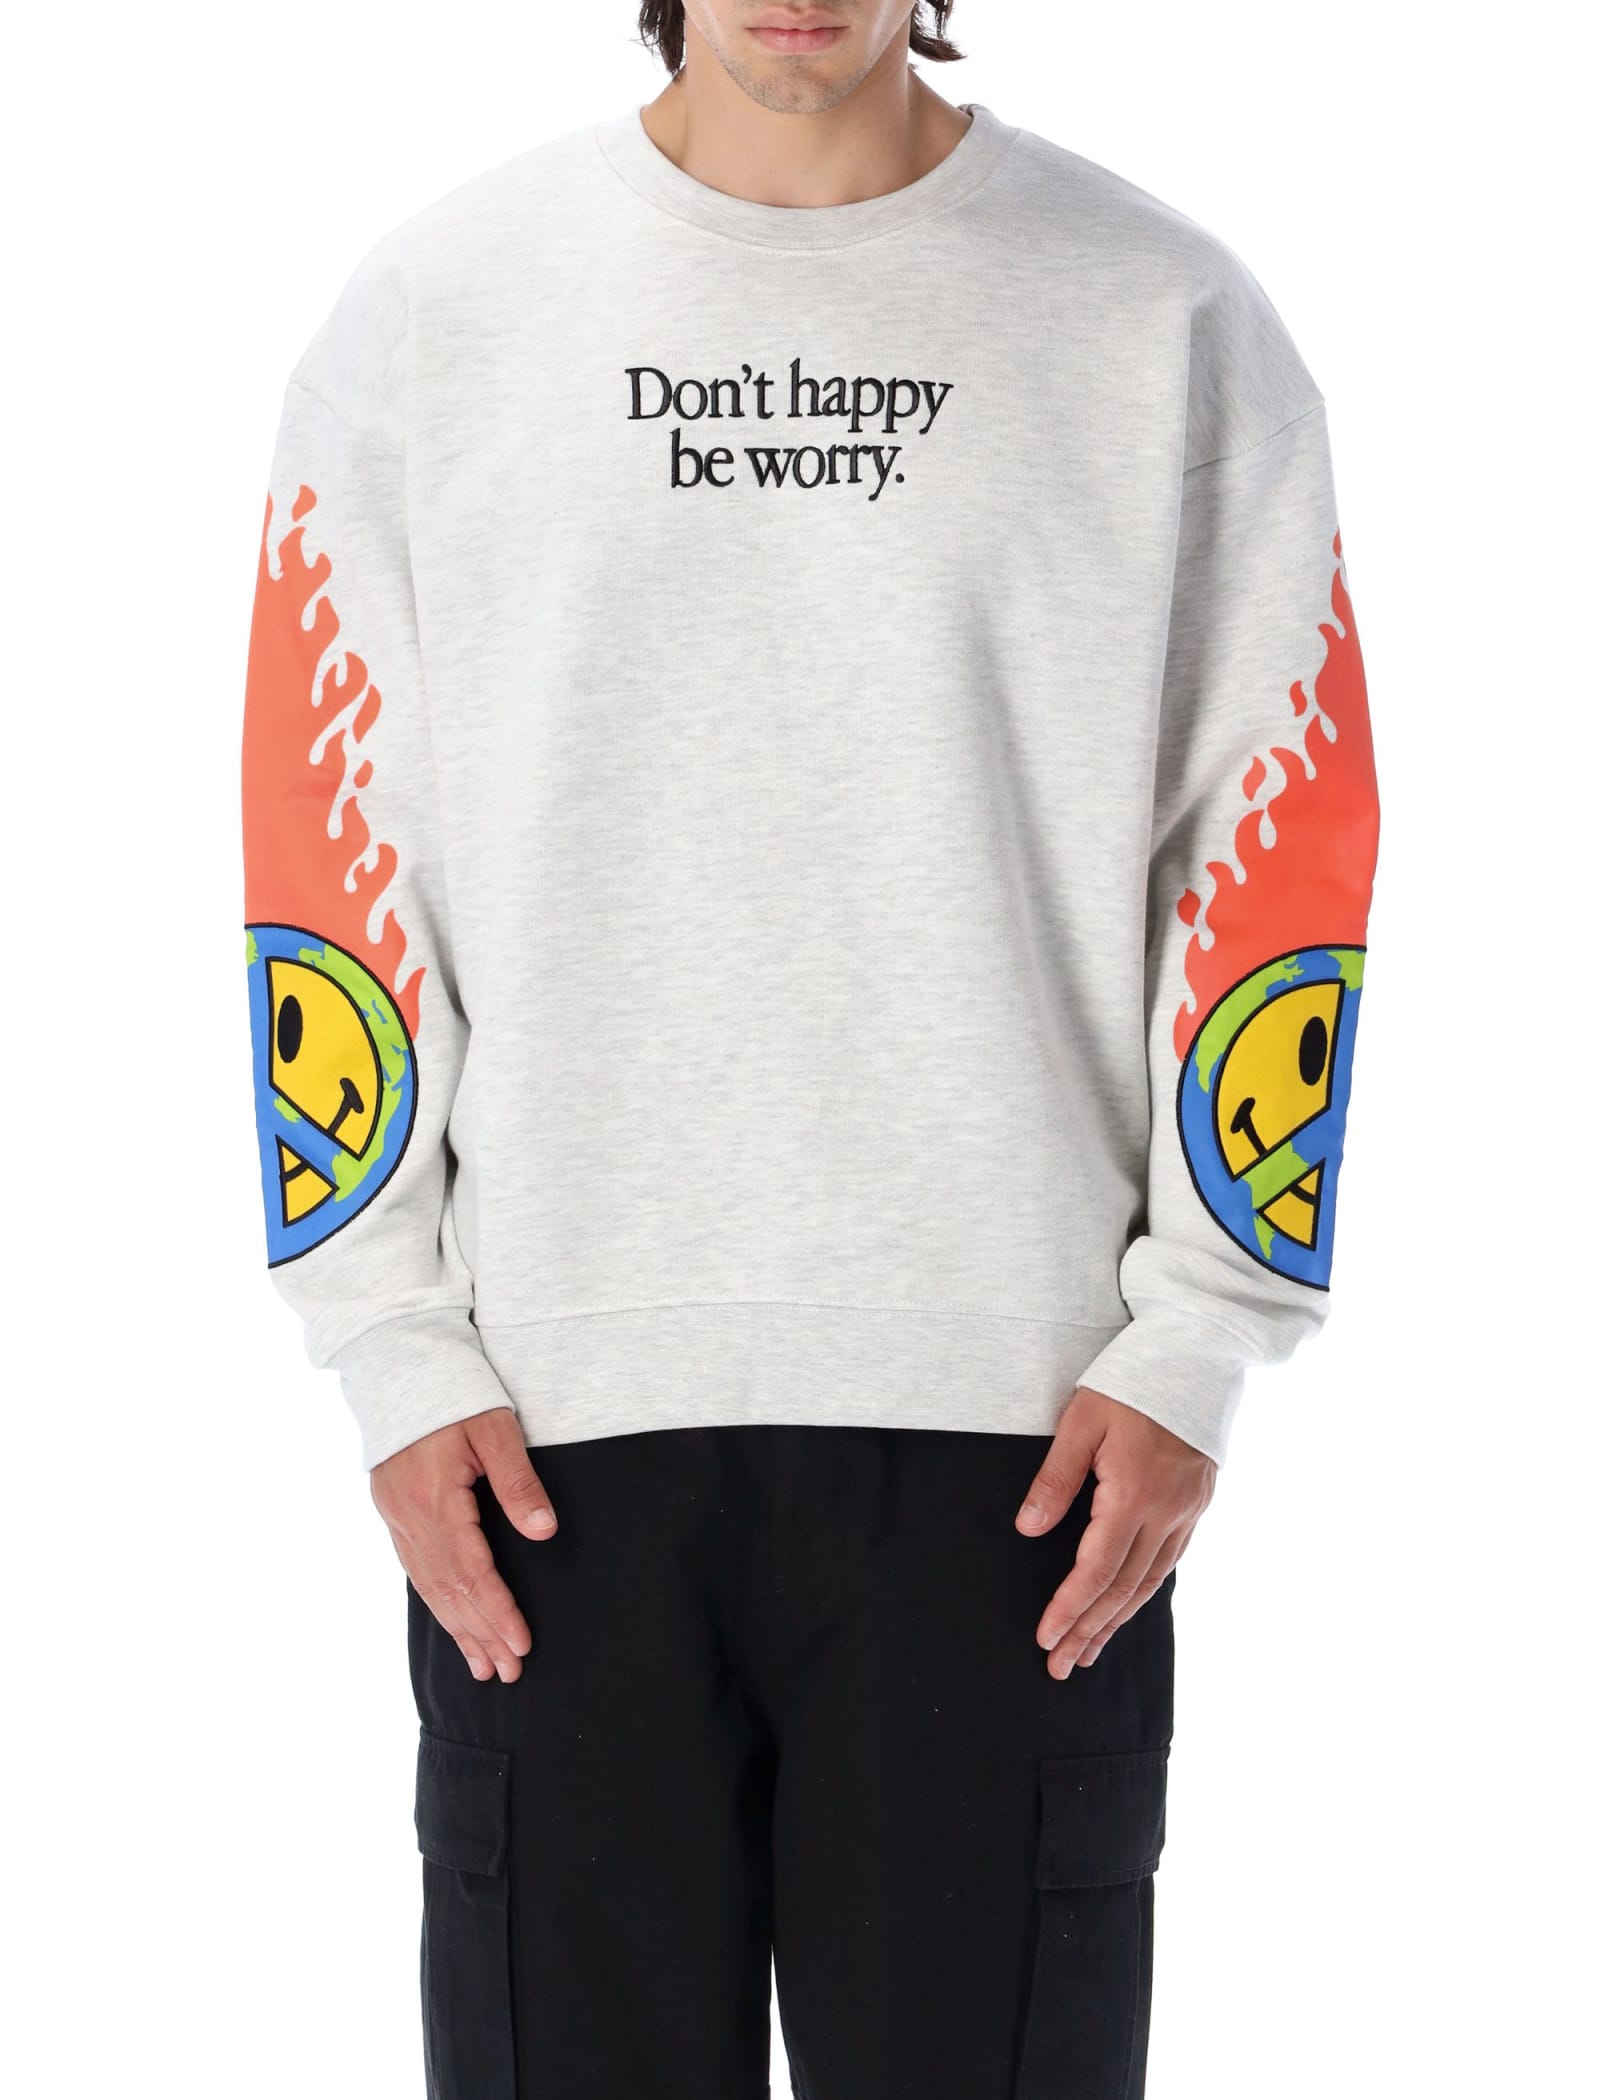 Market Smiley Heart On Fire Sweatshirt